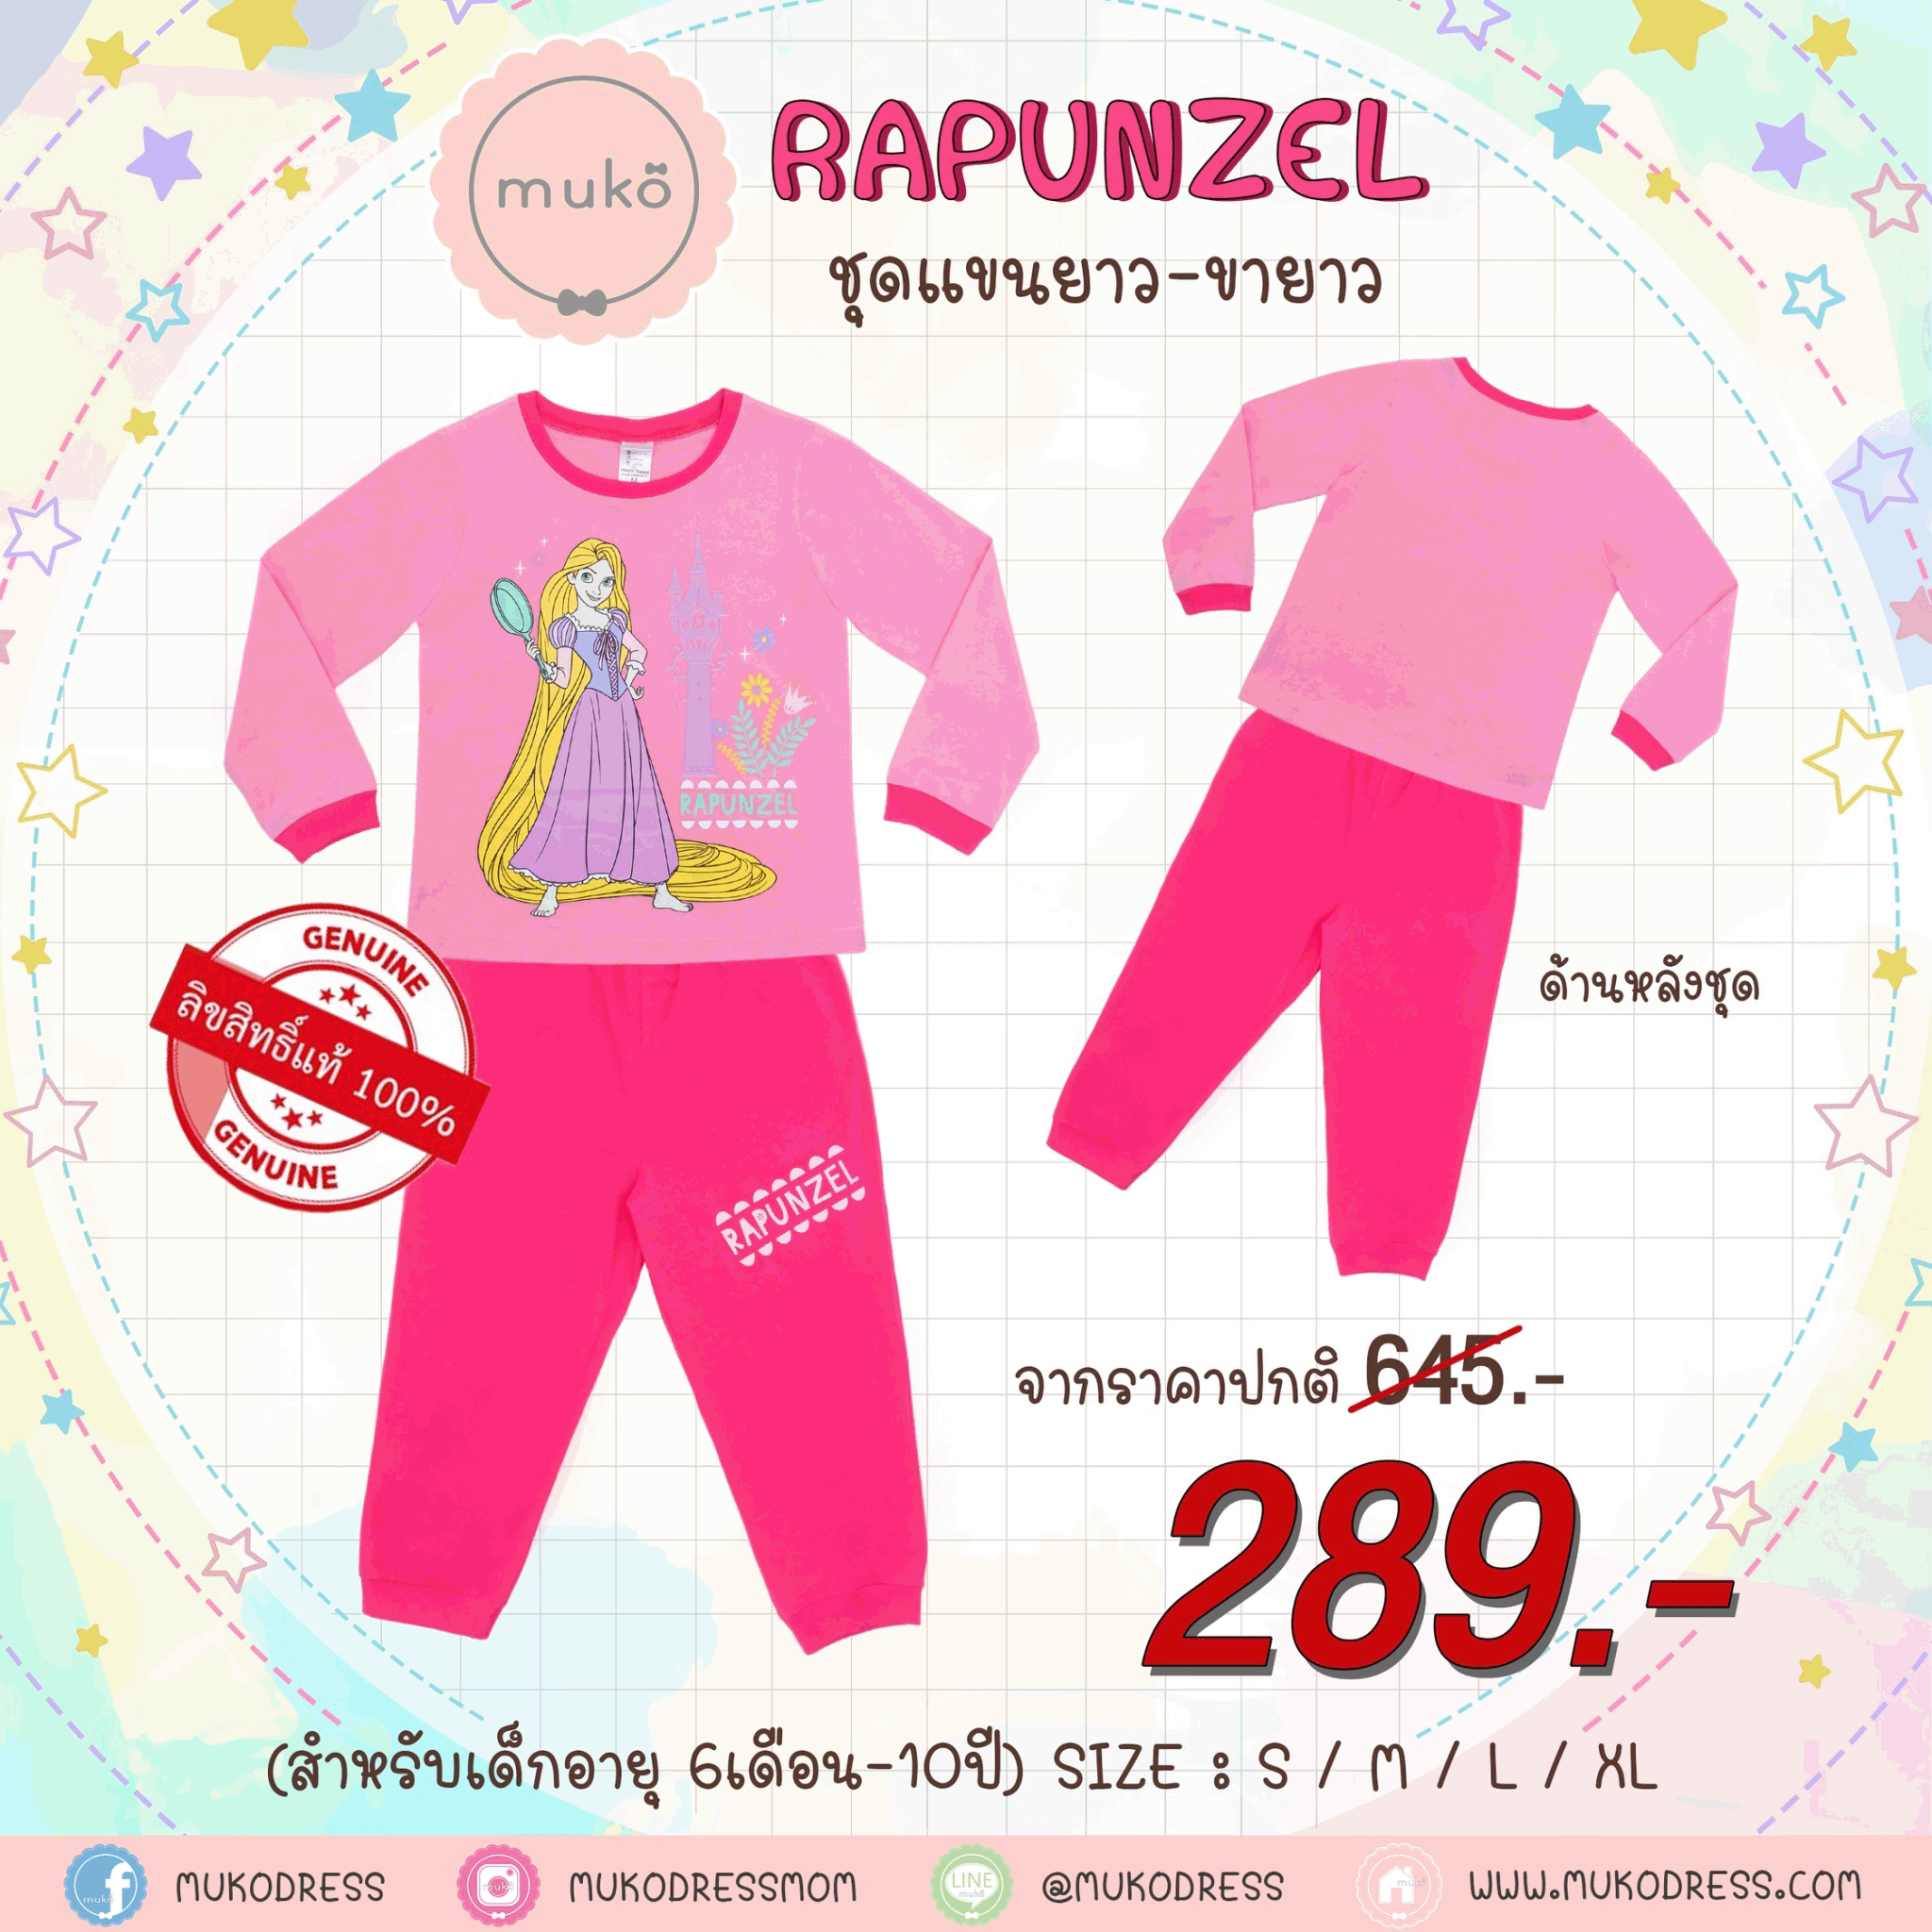 ชุดเด็ก 5-6 ขวบ แขนยาว-ขายาว (Size M) DPC127-10-XL-Pink M ลาย เจ้าหญิงราพันเซล Rapunzel สีชมพู